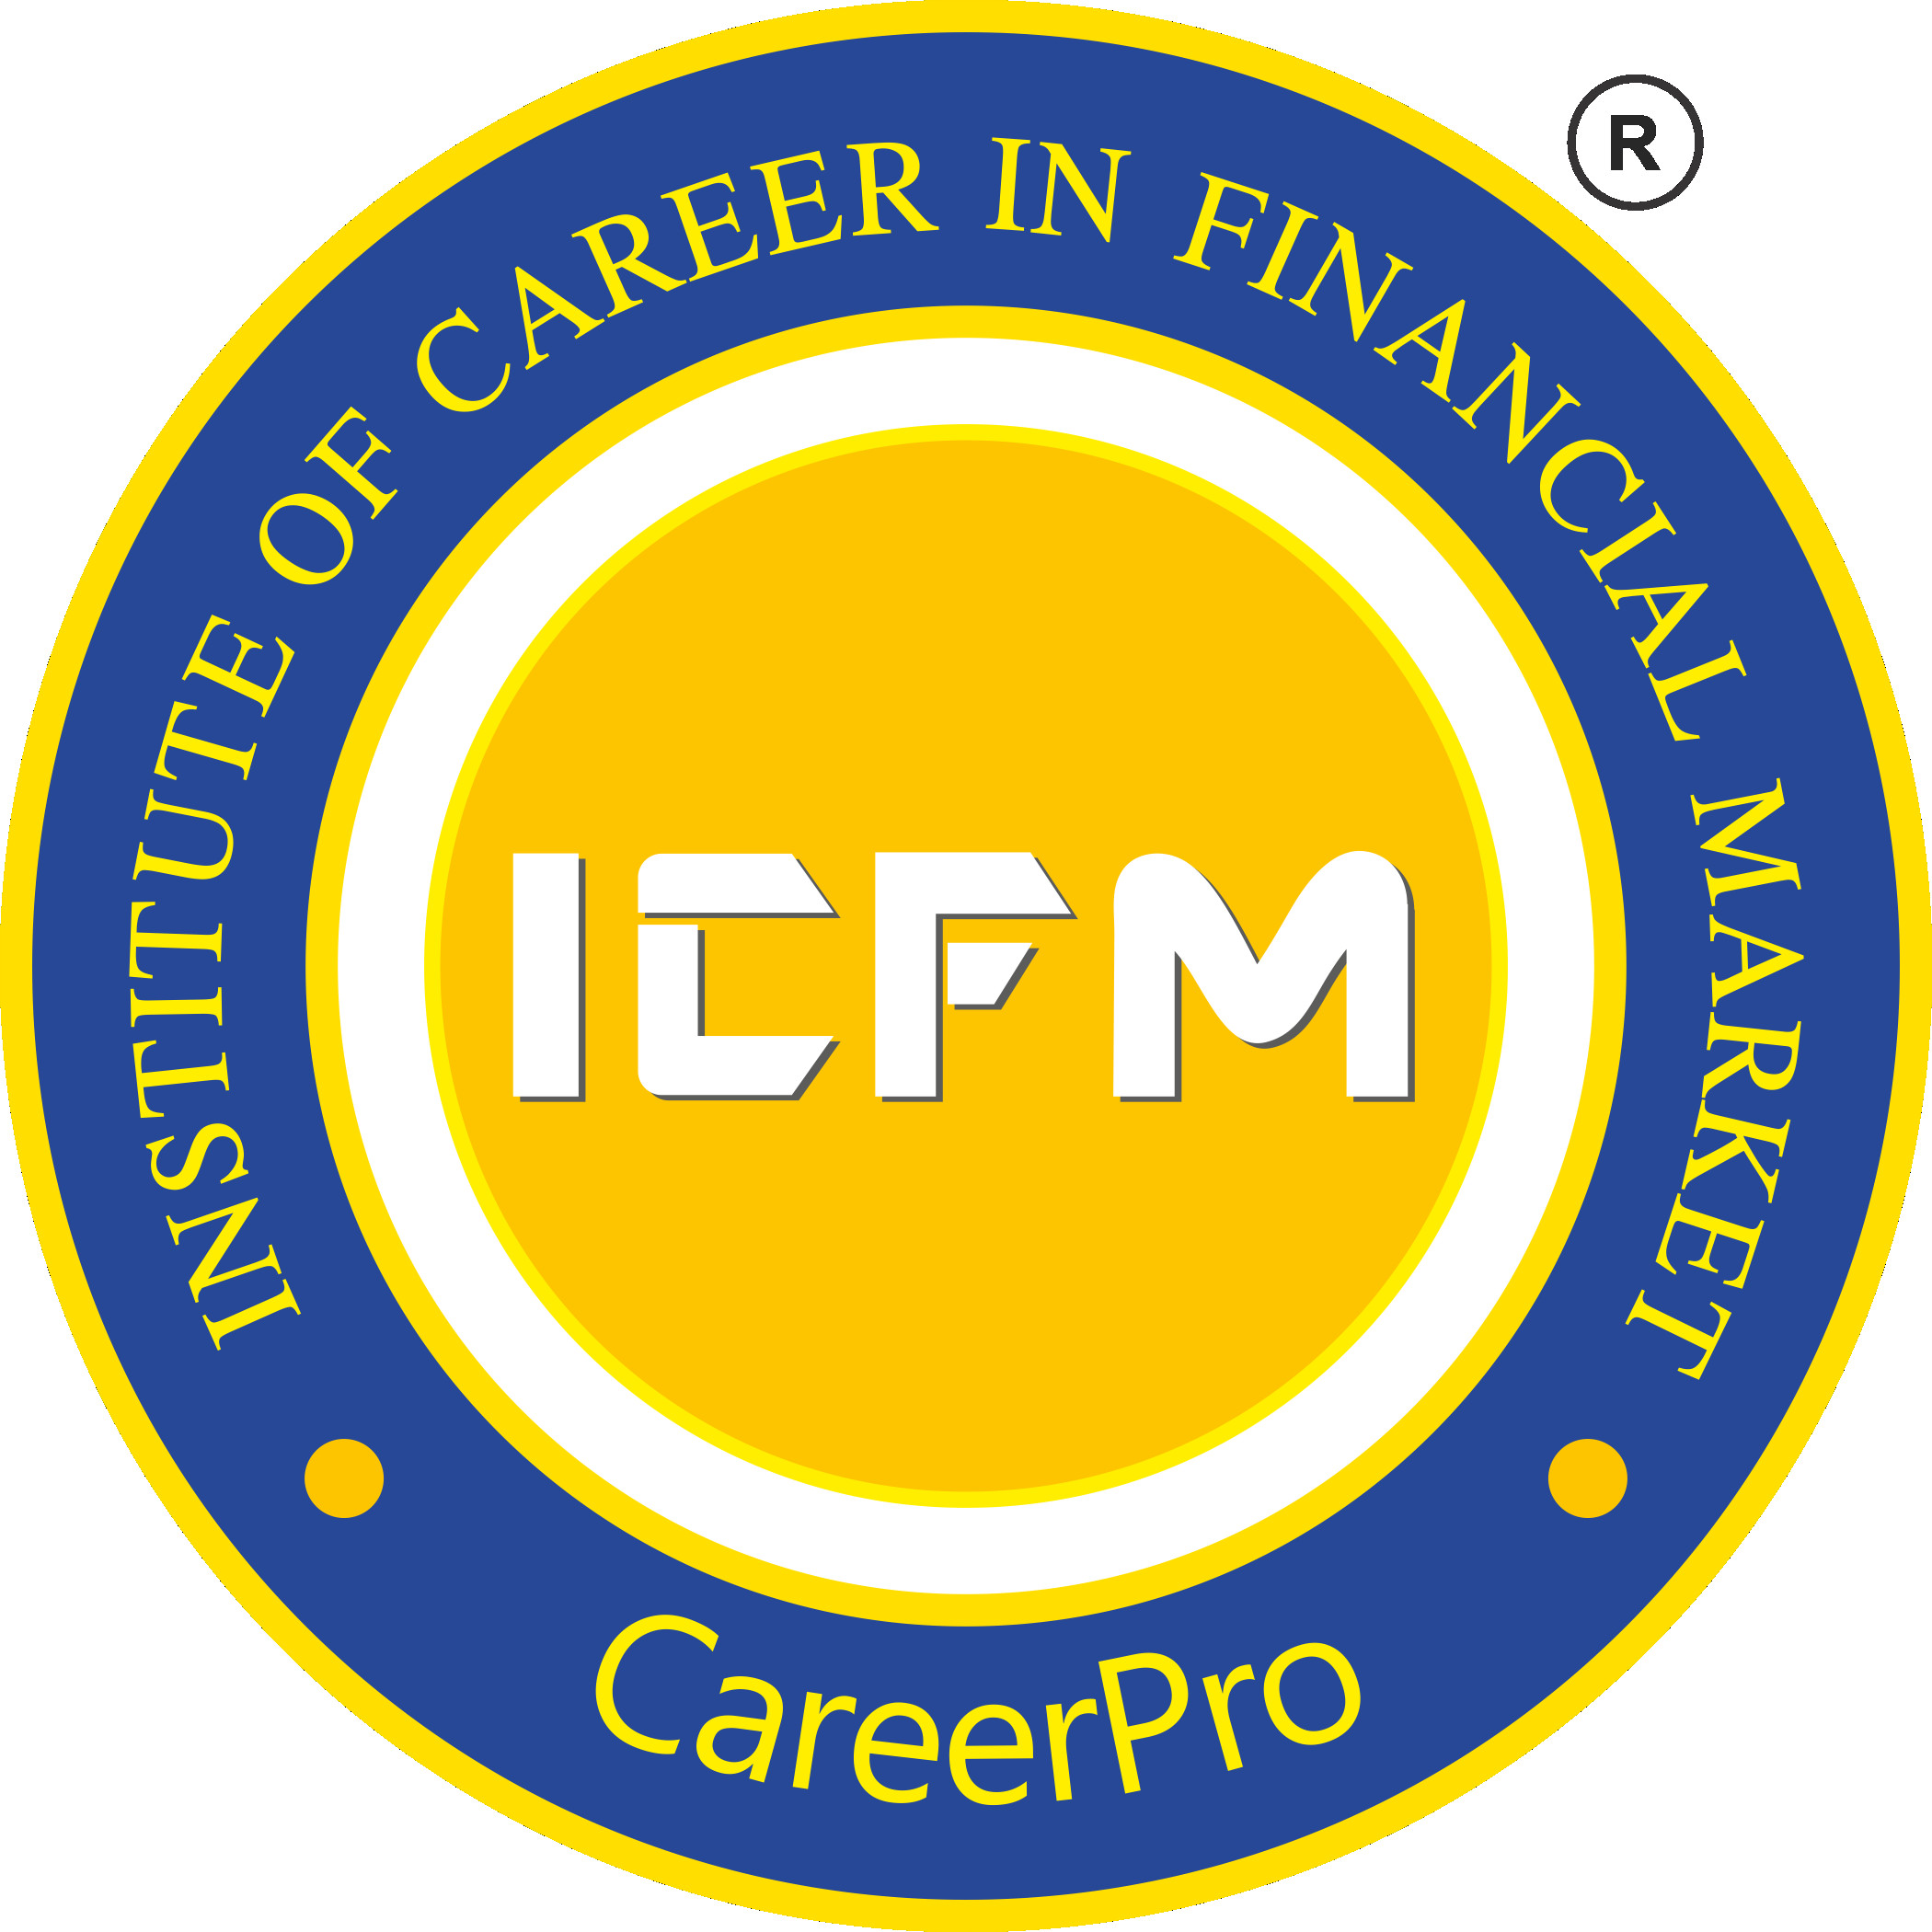 Icfm institute Profile Picture